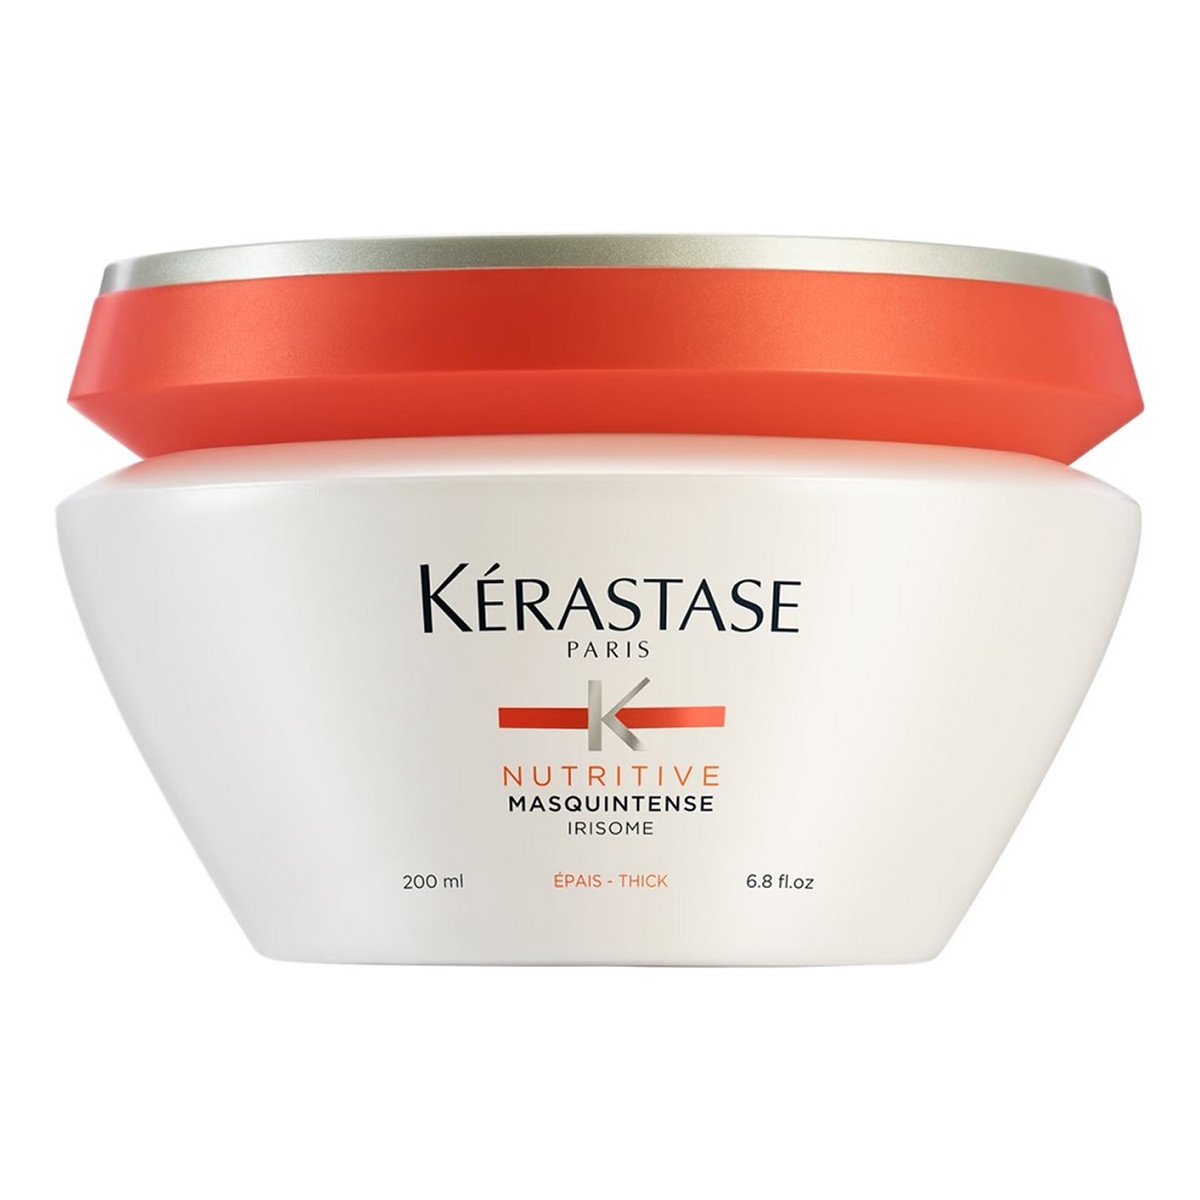 Kerastase Nutritive masquintense odżywcza maska do włosów grubych 200ml